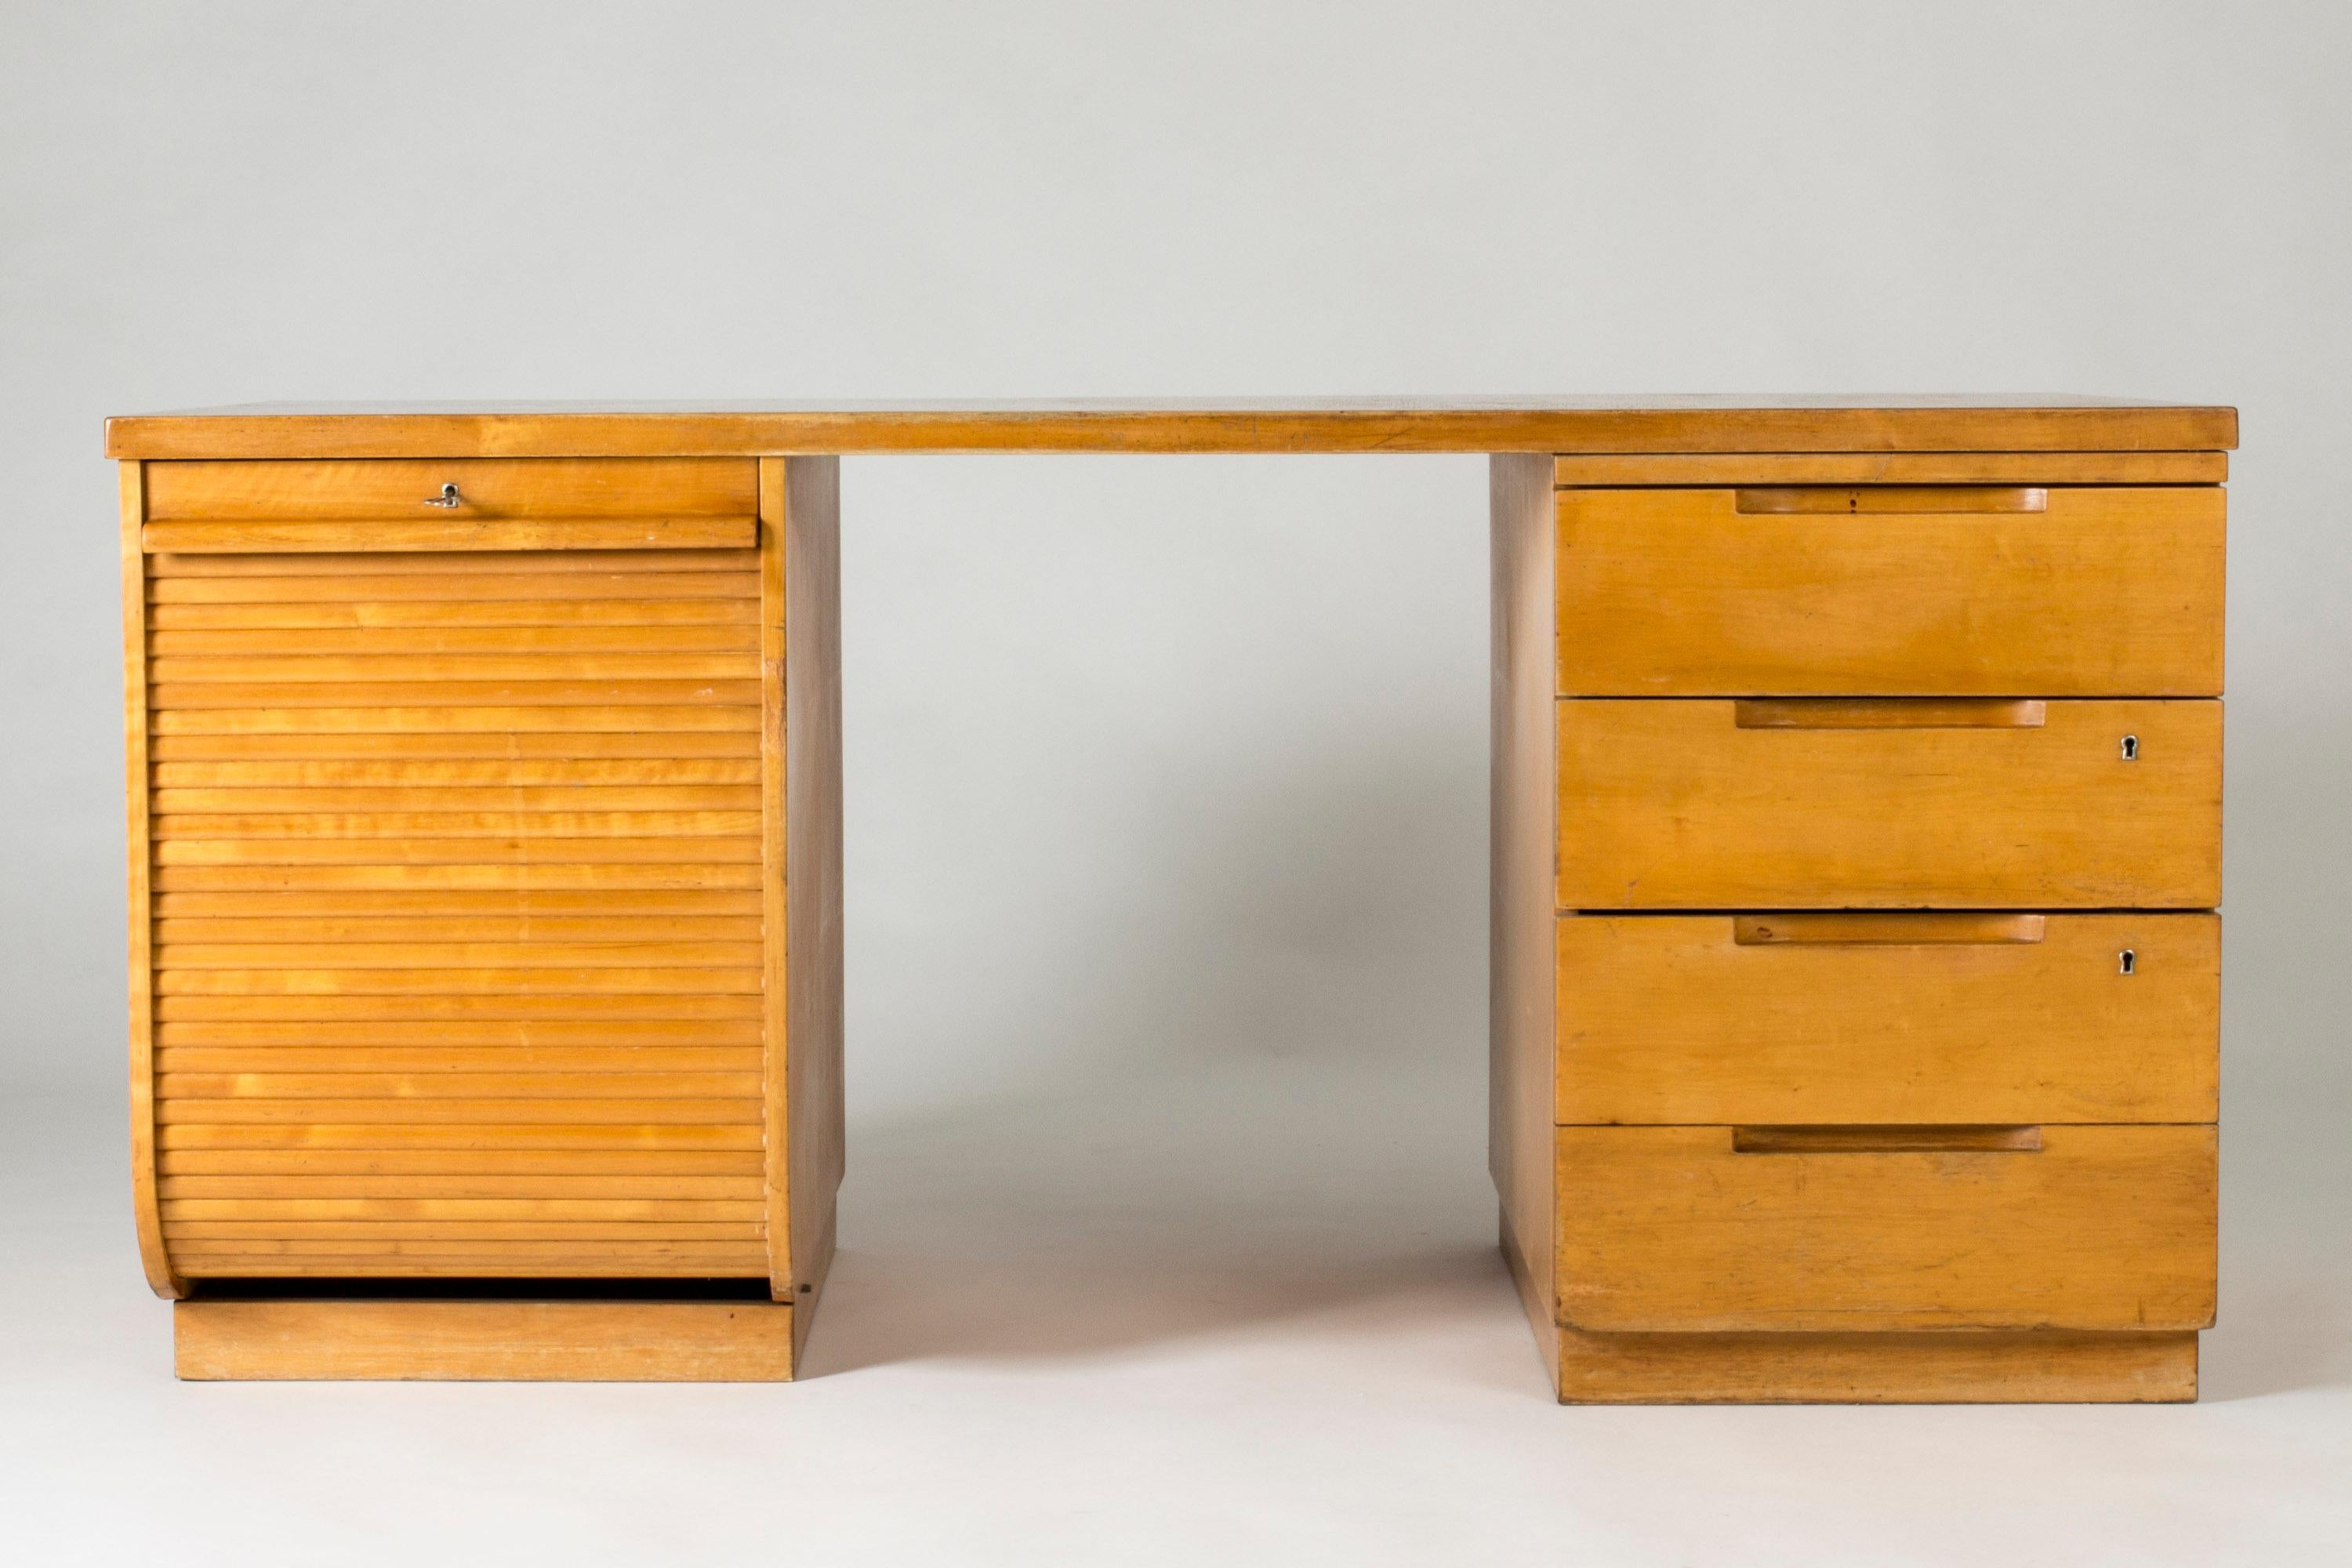 Bureau étonnant d'Alvar Aalto, en bouleau, au design compact et fonctionnel. Des tiroirs à droite et un classeur à gauche avec une porte à jalousie.

Taches d'encre à l'intérieur du tiroir supérieur.